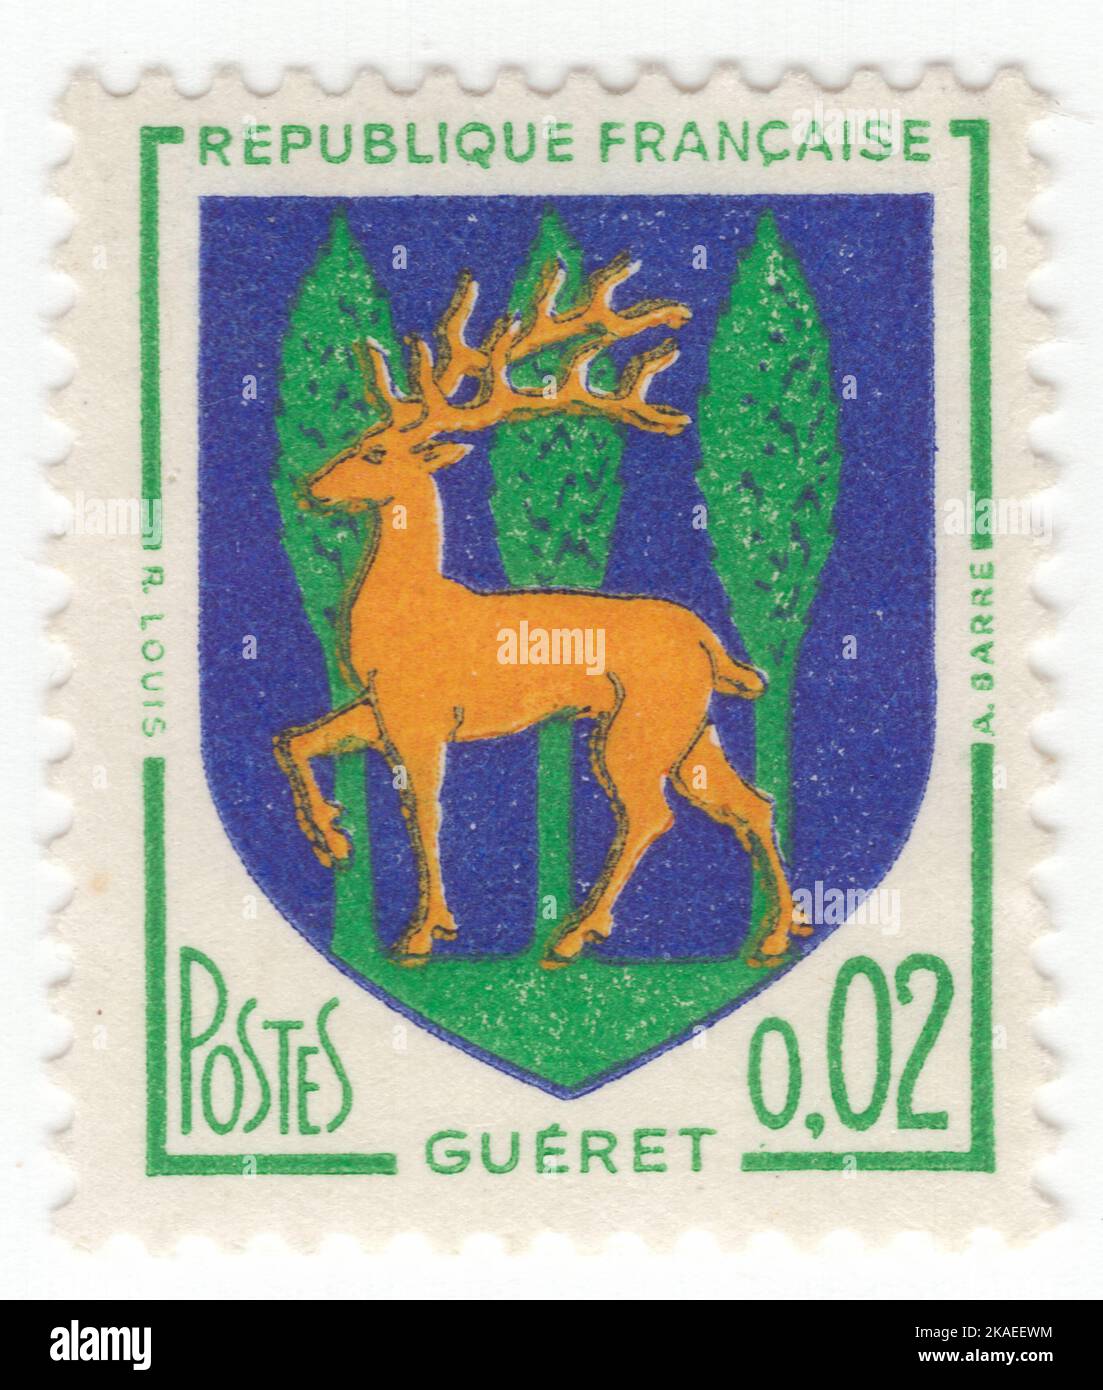 FRANCE - 1964 : timbre-poste jaune, violet-bleu et émeraude de 2 centimes représentant les armoiries de Guéret, est une commune et la préfecture du département de la Creuse dans la région de la Nouvelle-Aquitaine, dans le centre de la France Banque D'Images